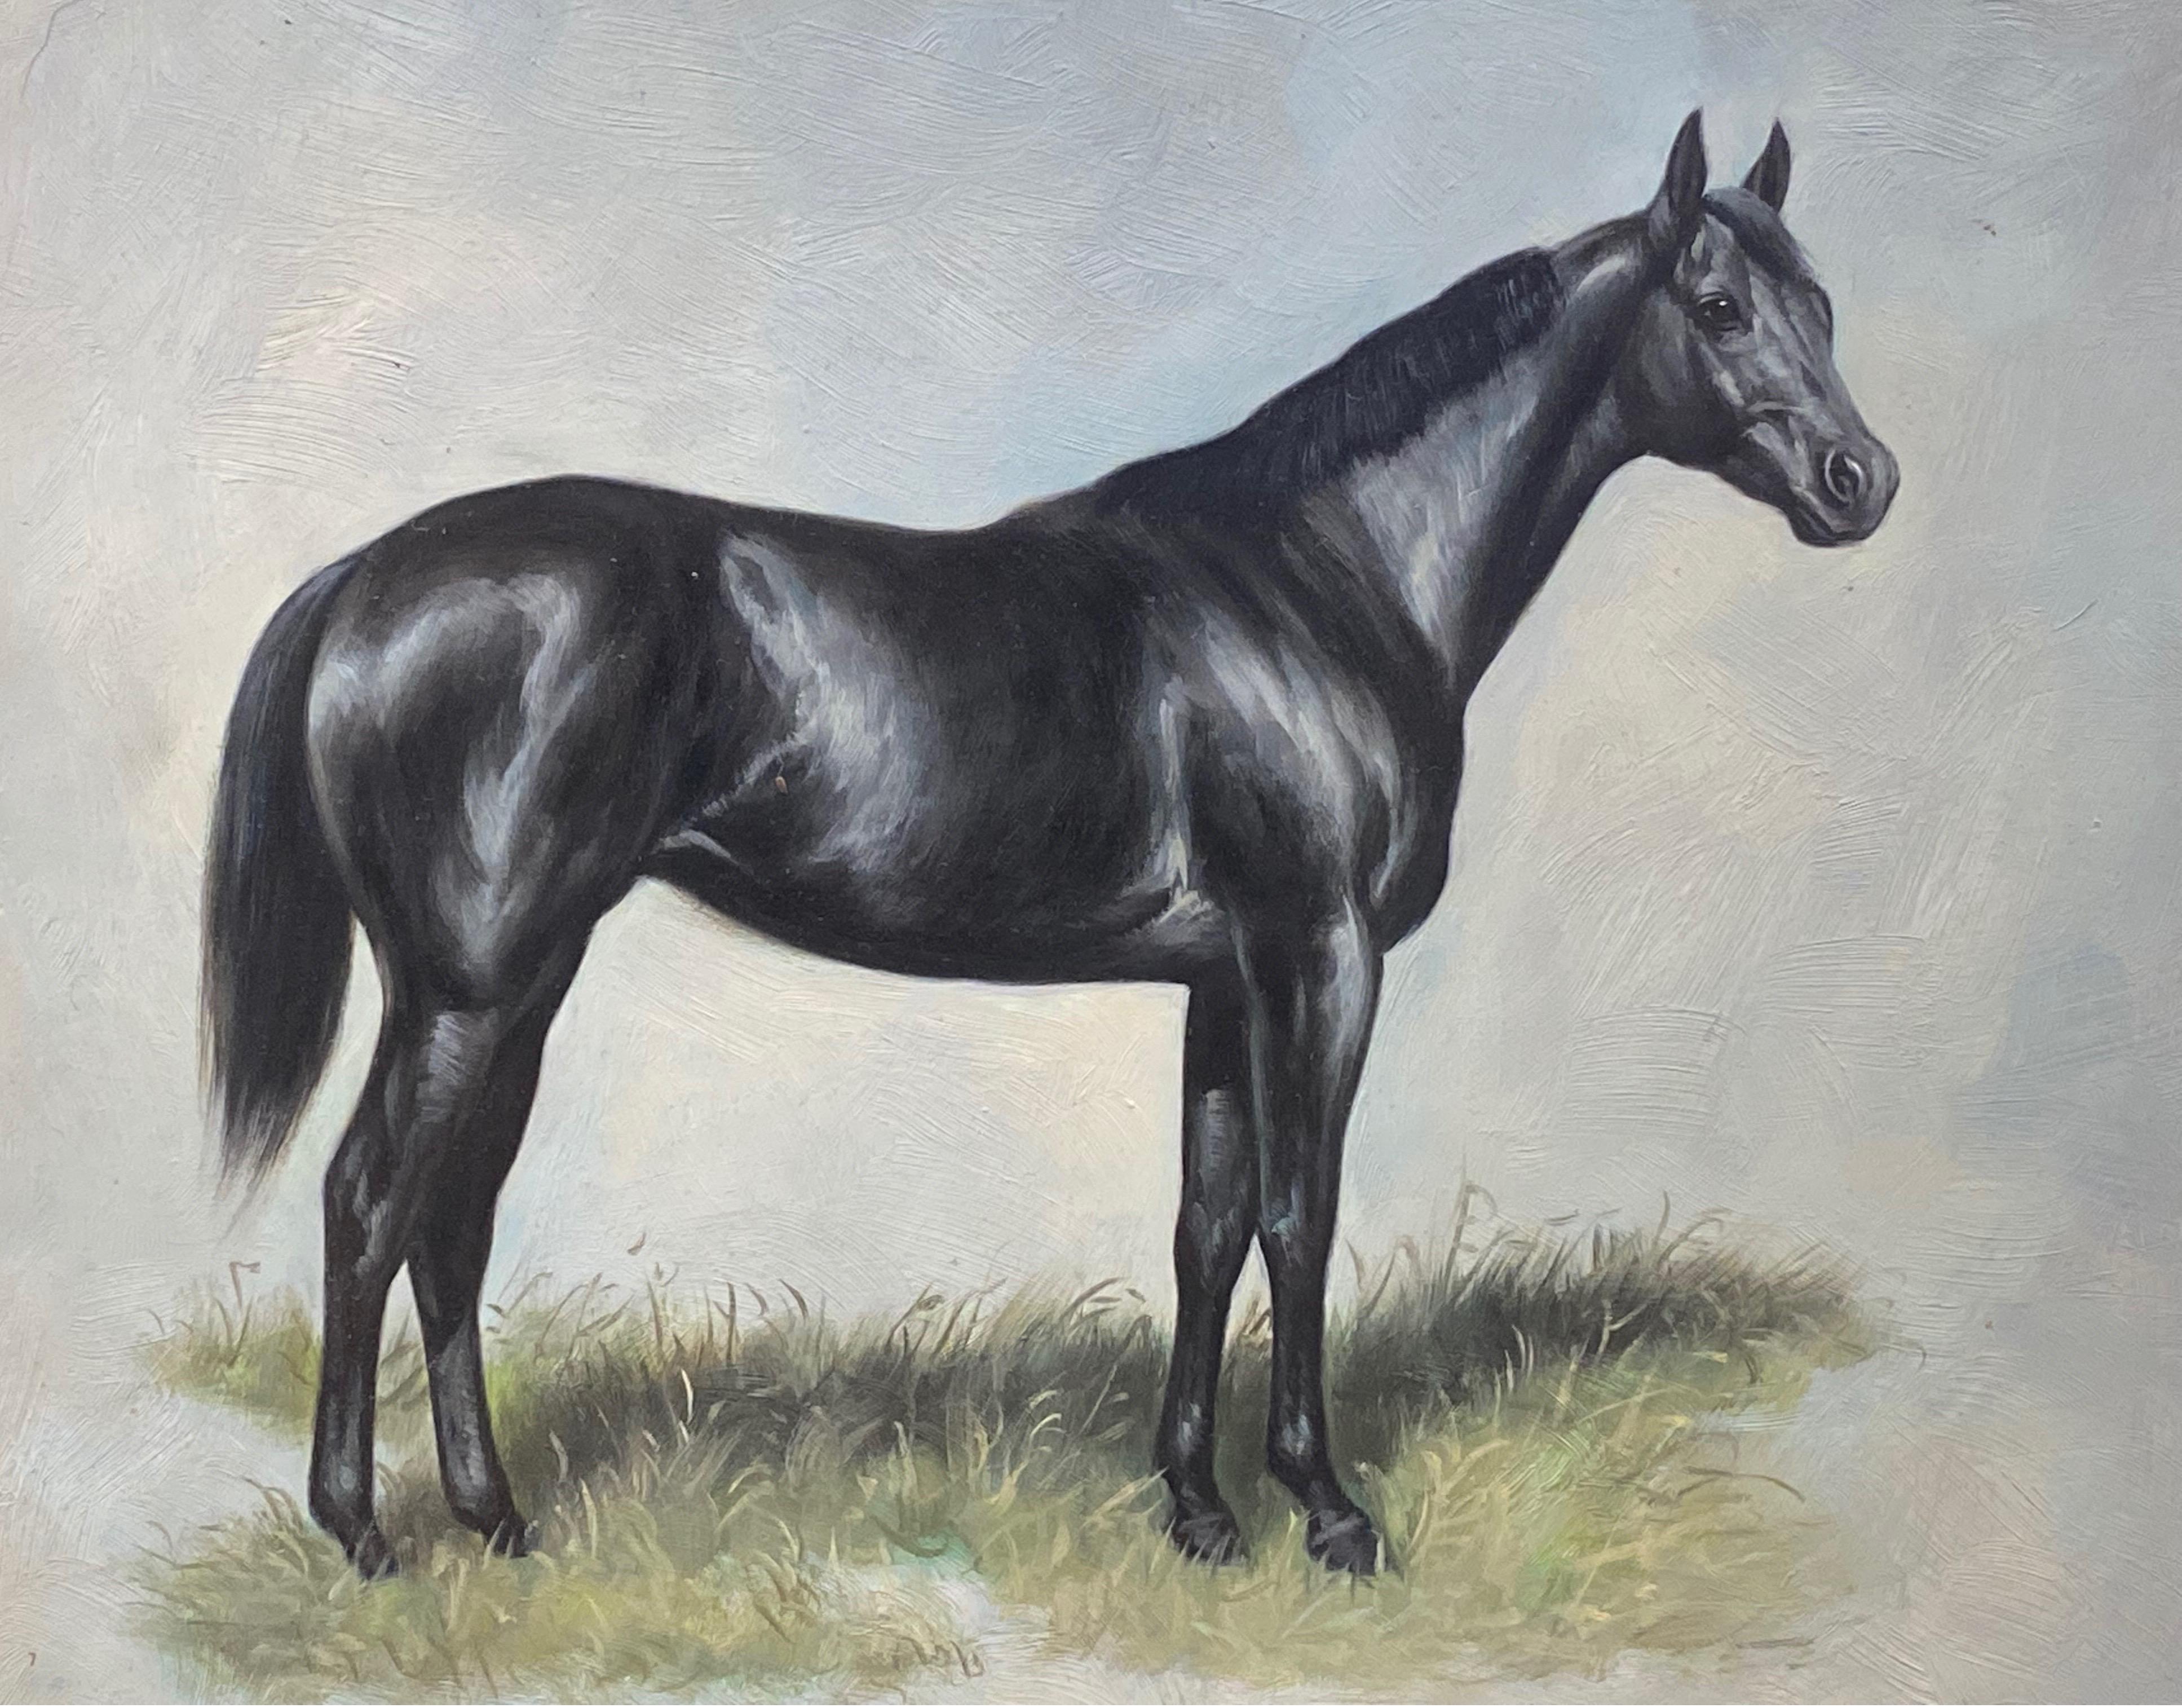 Landscape Painting British Sporting Art - Peinture à l'huile britannique d'un portrait de cheval équestre - Cheval debout